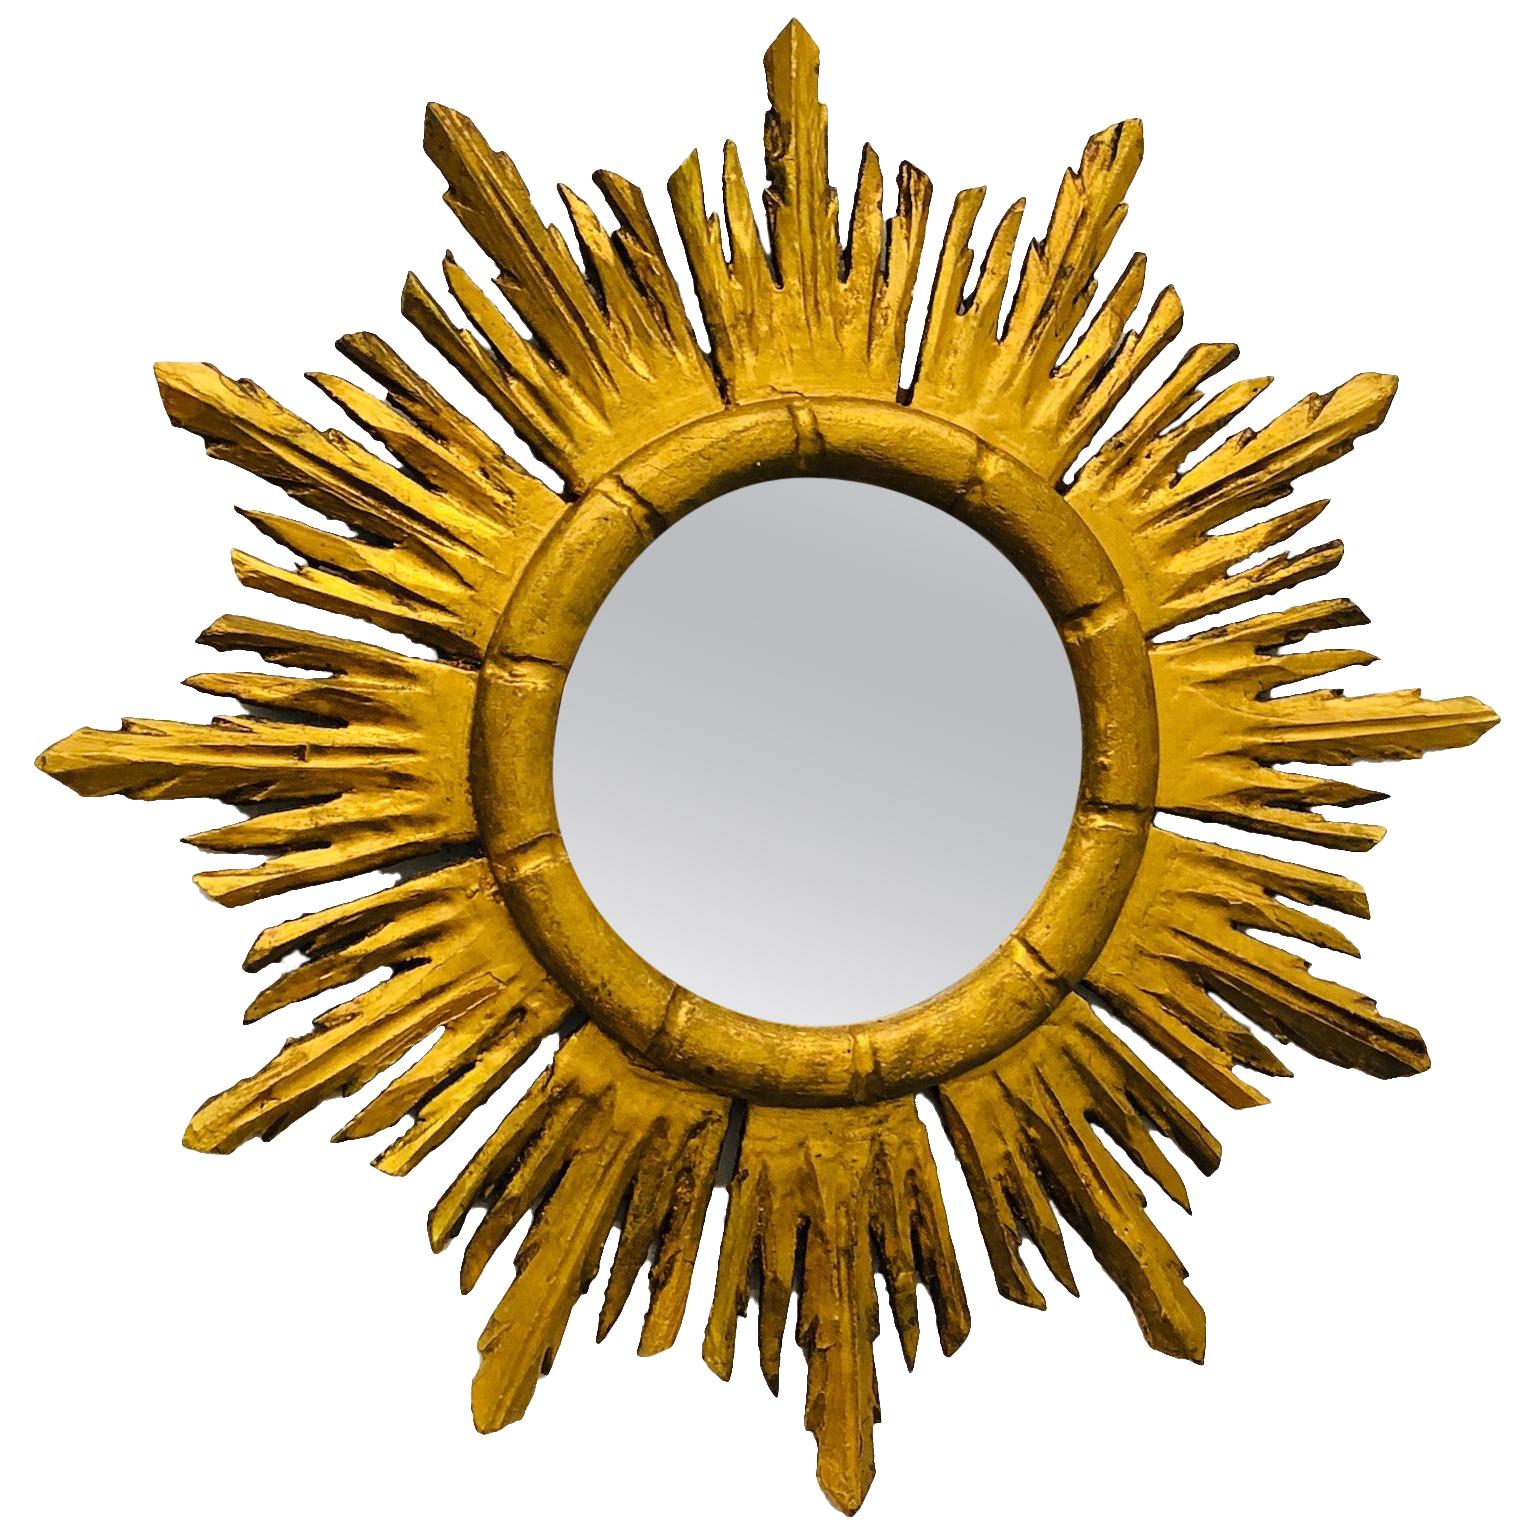 Stunning Italian Starburst Sunburst Gilded Wood Mirror, circa 1930s